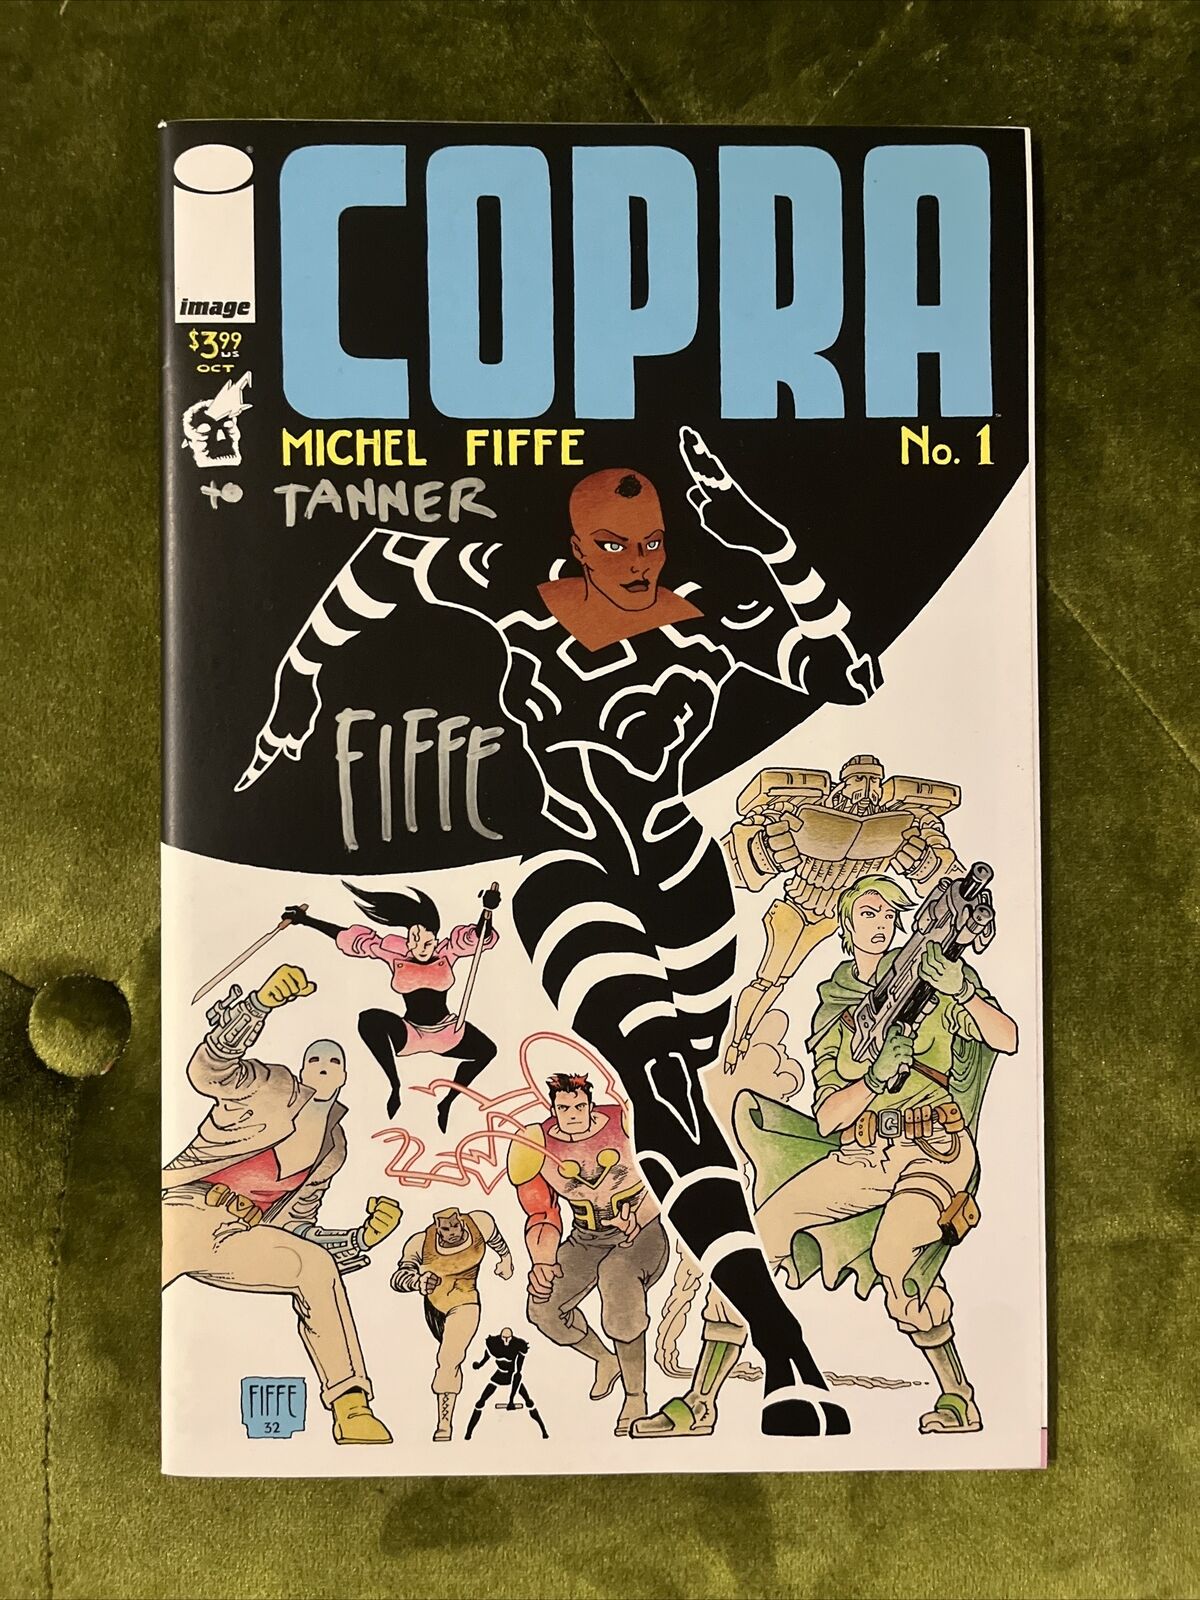 “Copra” #1 Vol. 2 (Image 2020) Michel Fiffe Signed